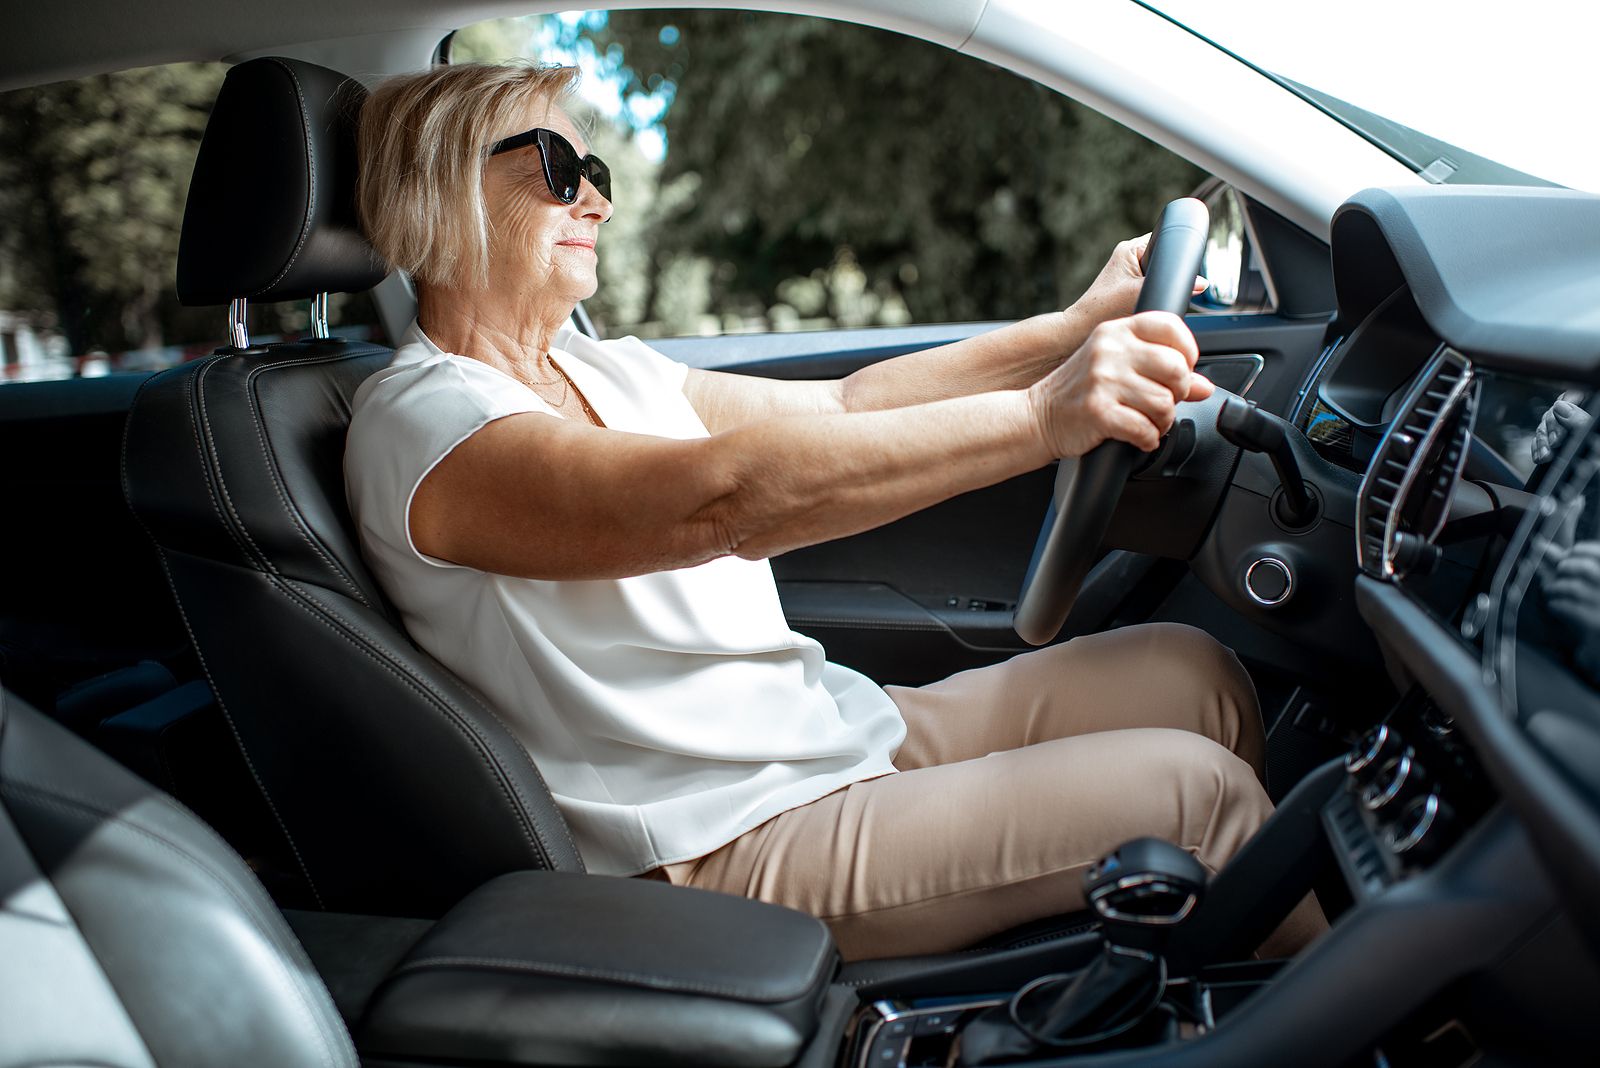 Las 5 cosas que tienes que debes tener en el coche para ahorrarte multas de 500 euros, según la DGT